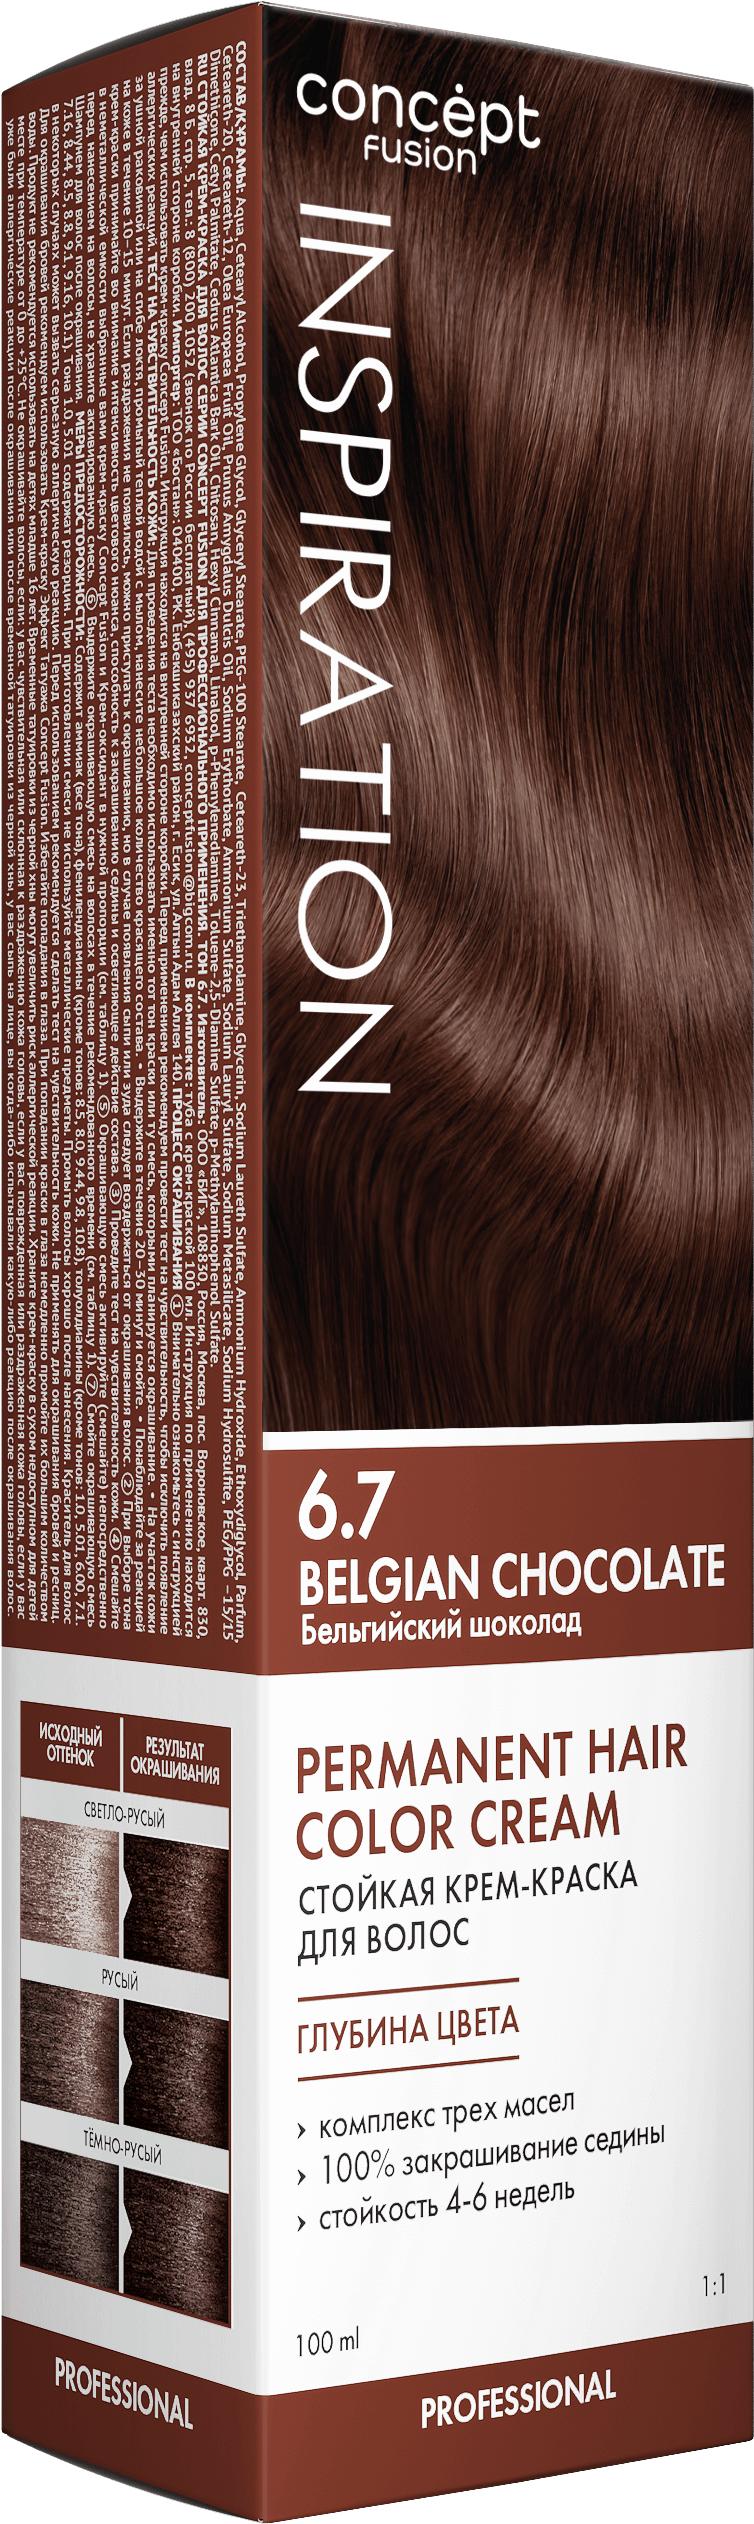 Краска для волос Concept Fusion  Бельгийский шоколад (Belgian Chocolate) 6.7 100 мл., картон